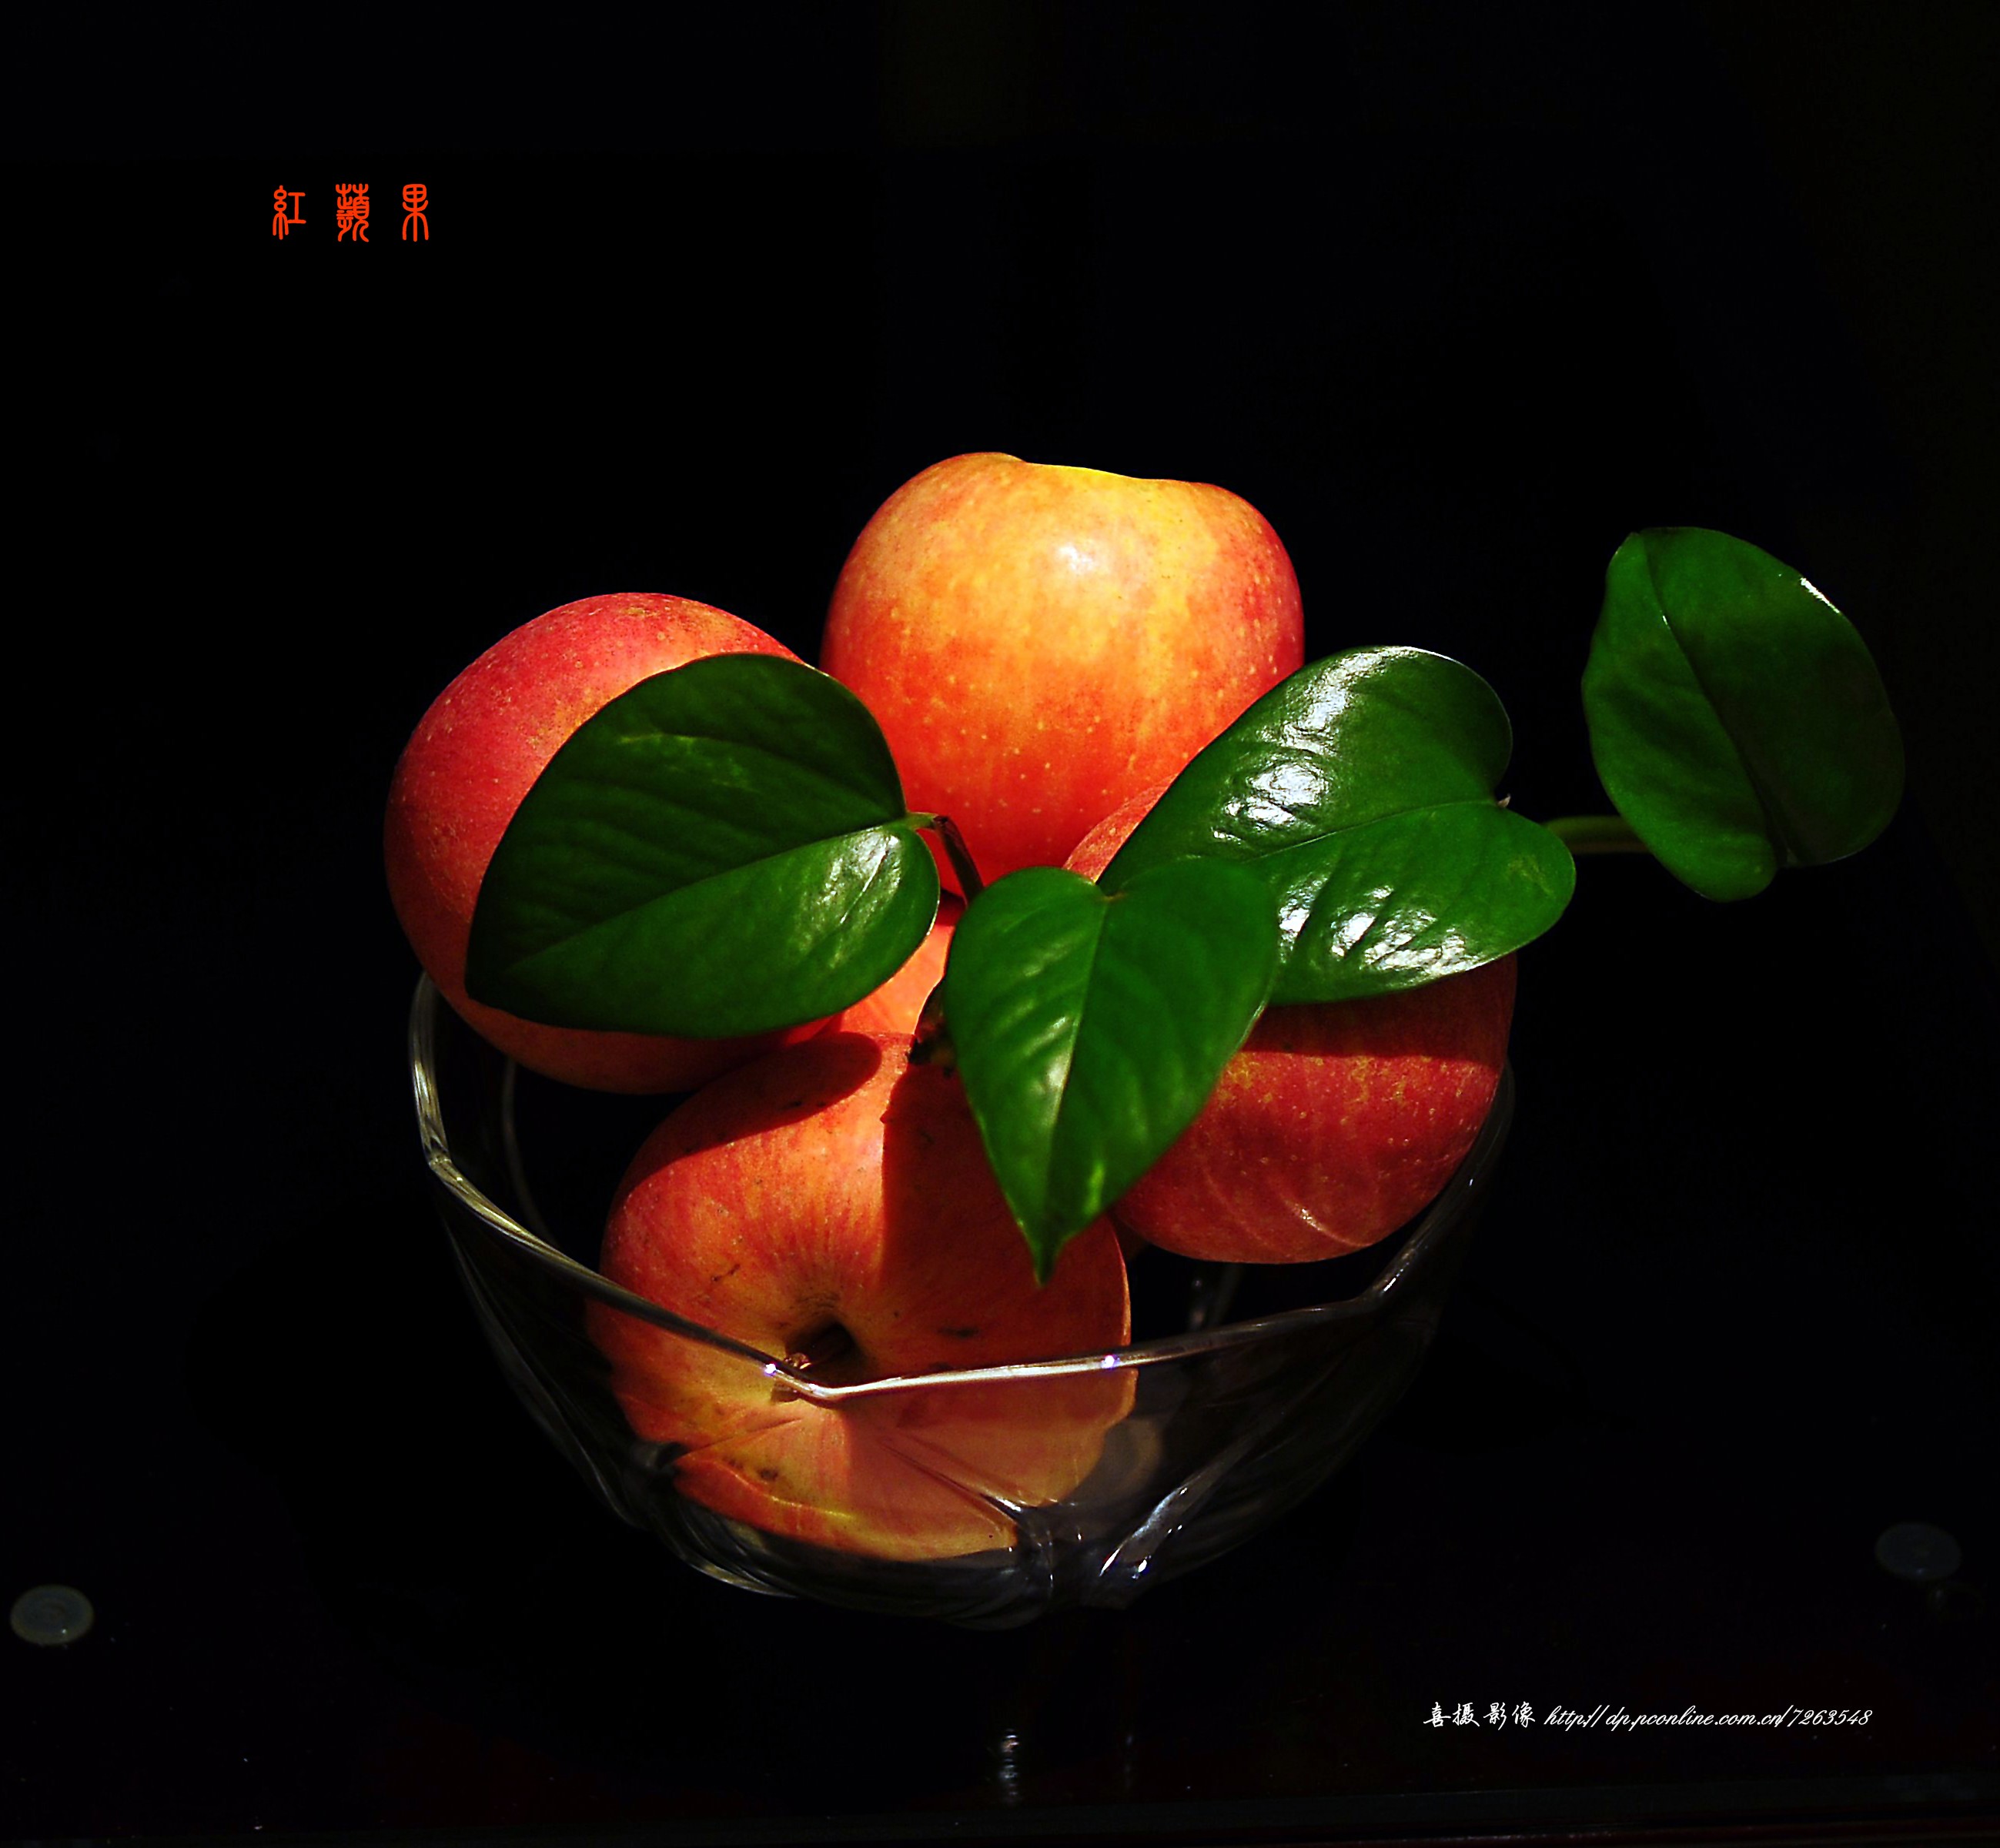 放在筐里的红苹果46221_水果_收获季节_图库壁纸_68Design